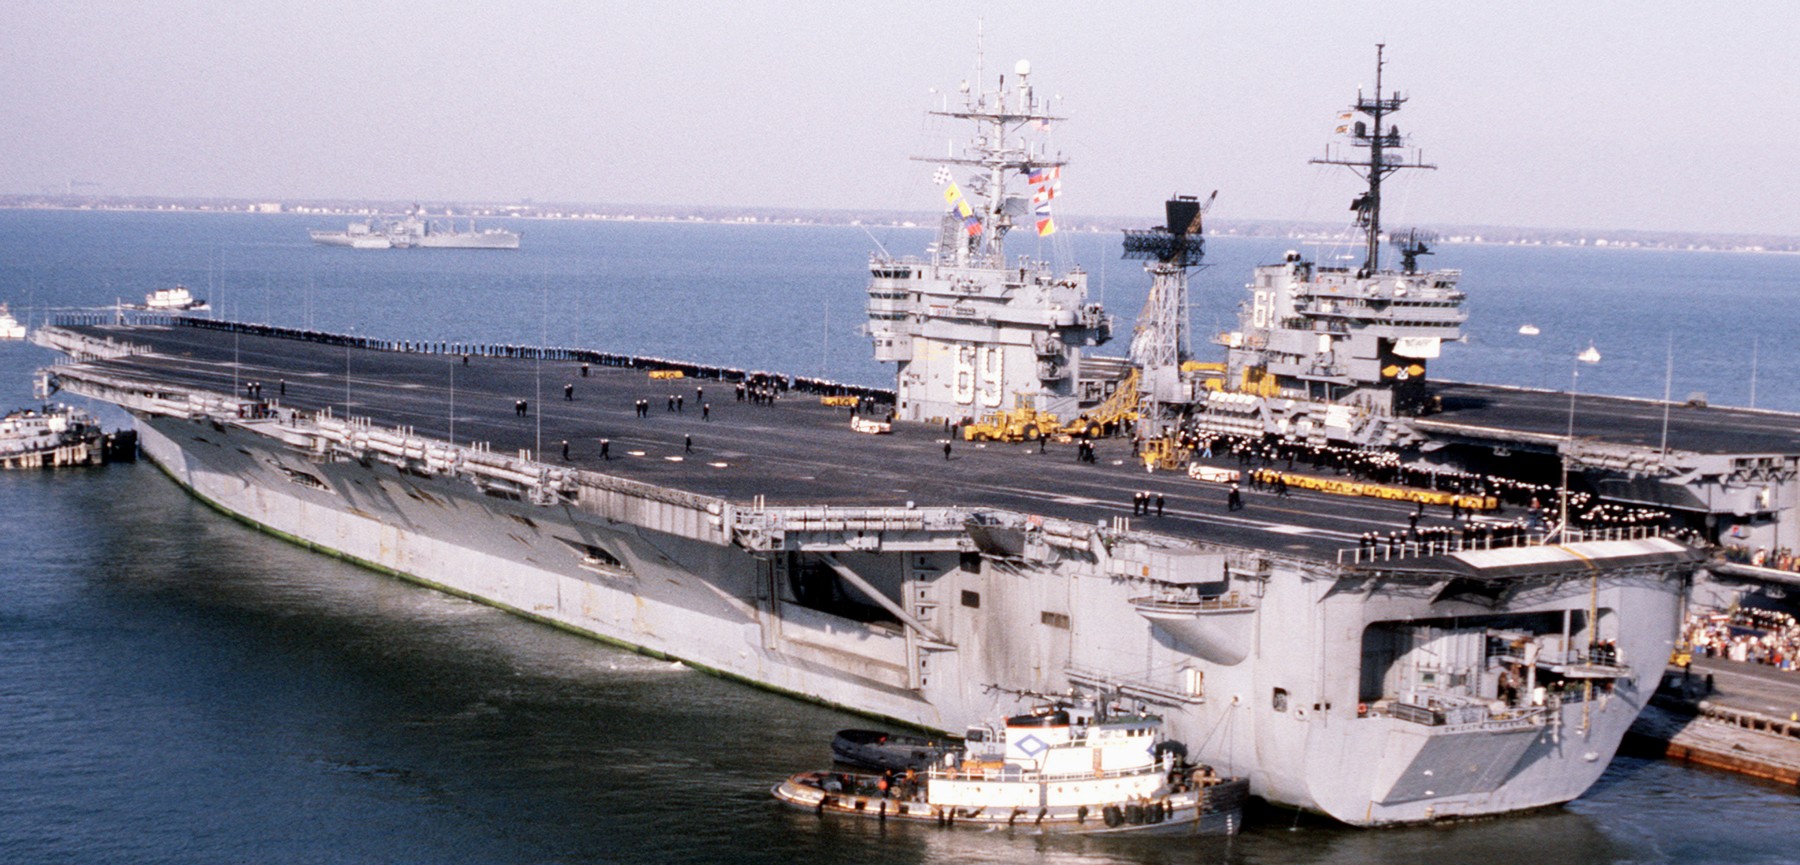 cvn-69 uss dwight d. eisenhower aircraft carrier us navy 238